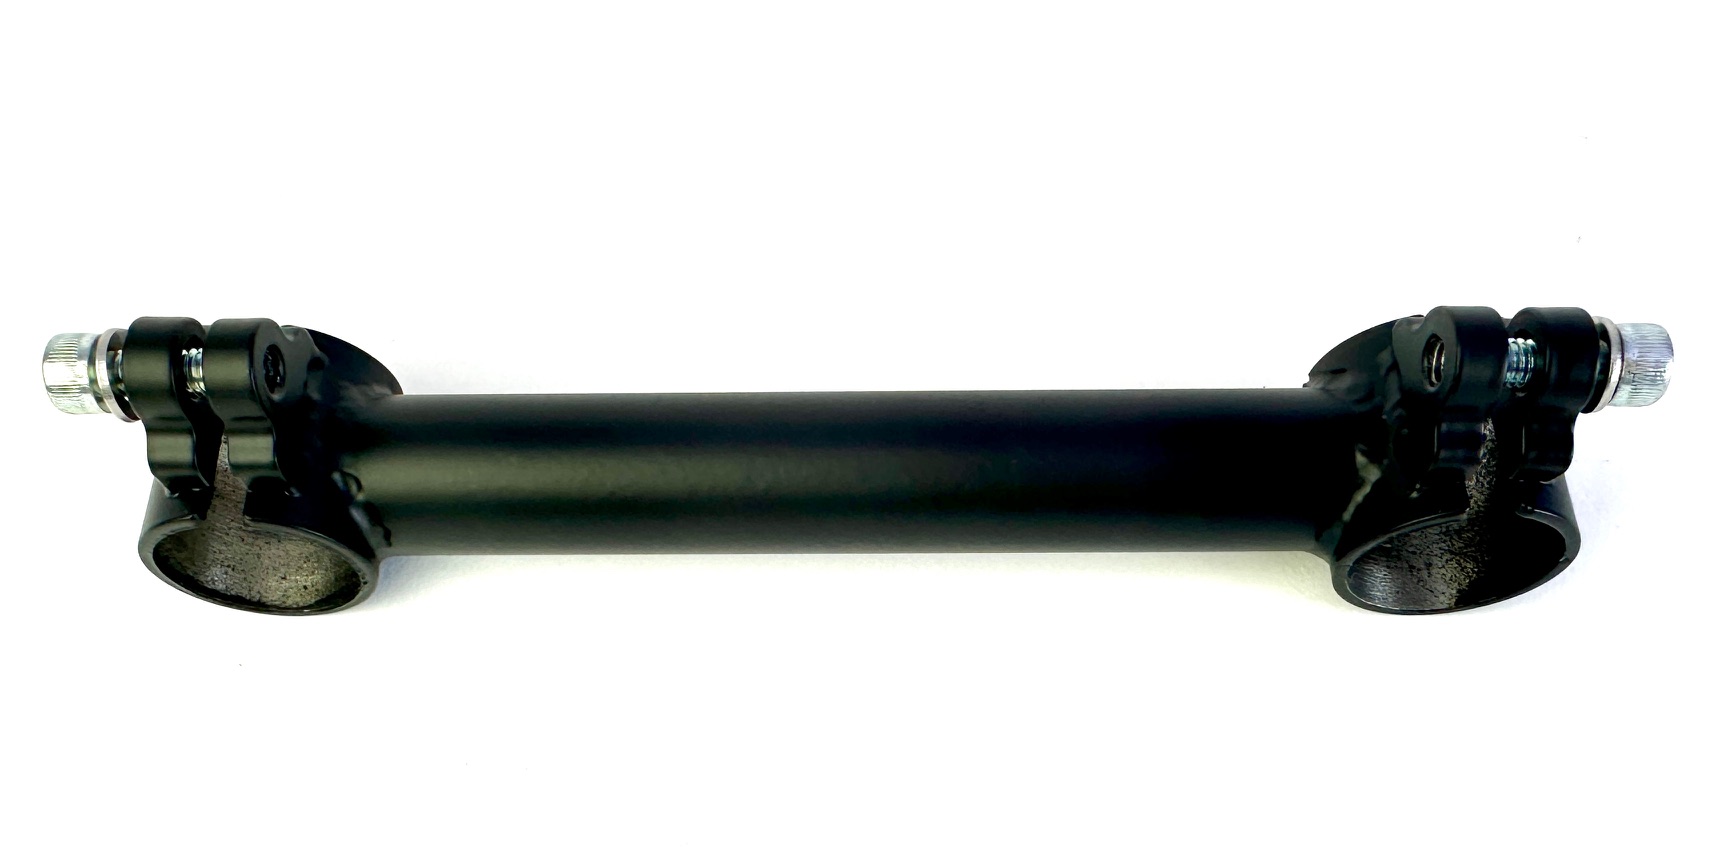 UD display holder for the Moke or Swing handlebar pair, matt black